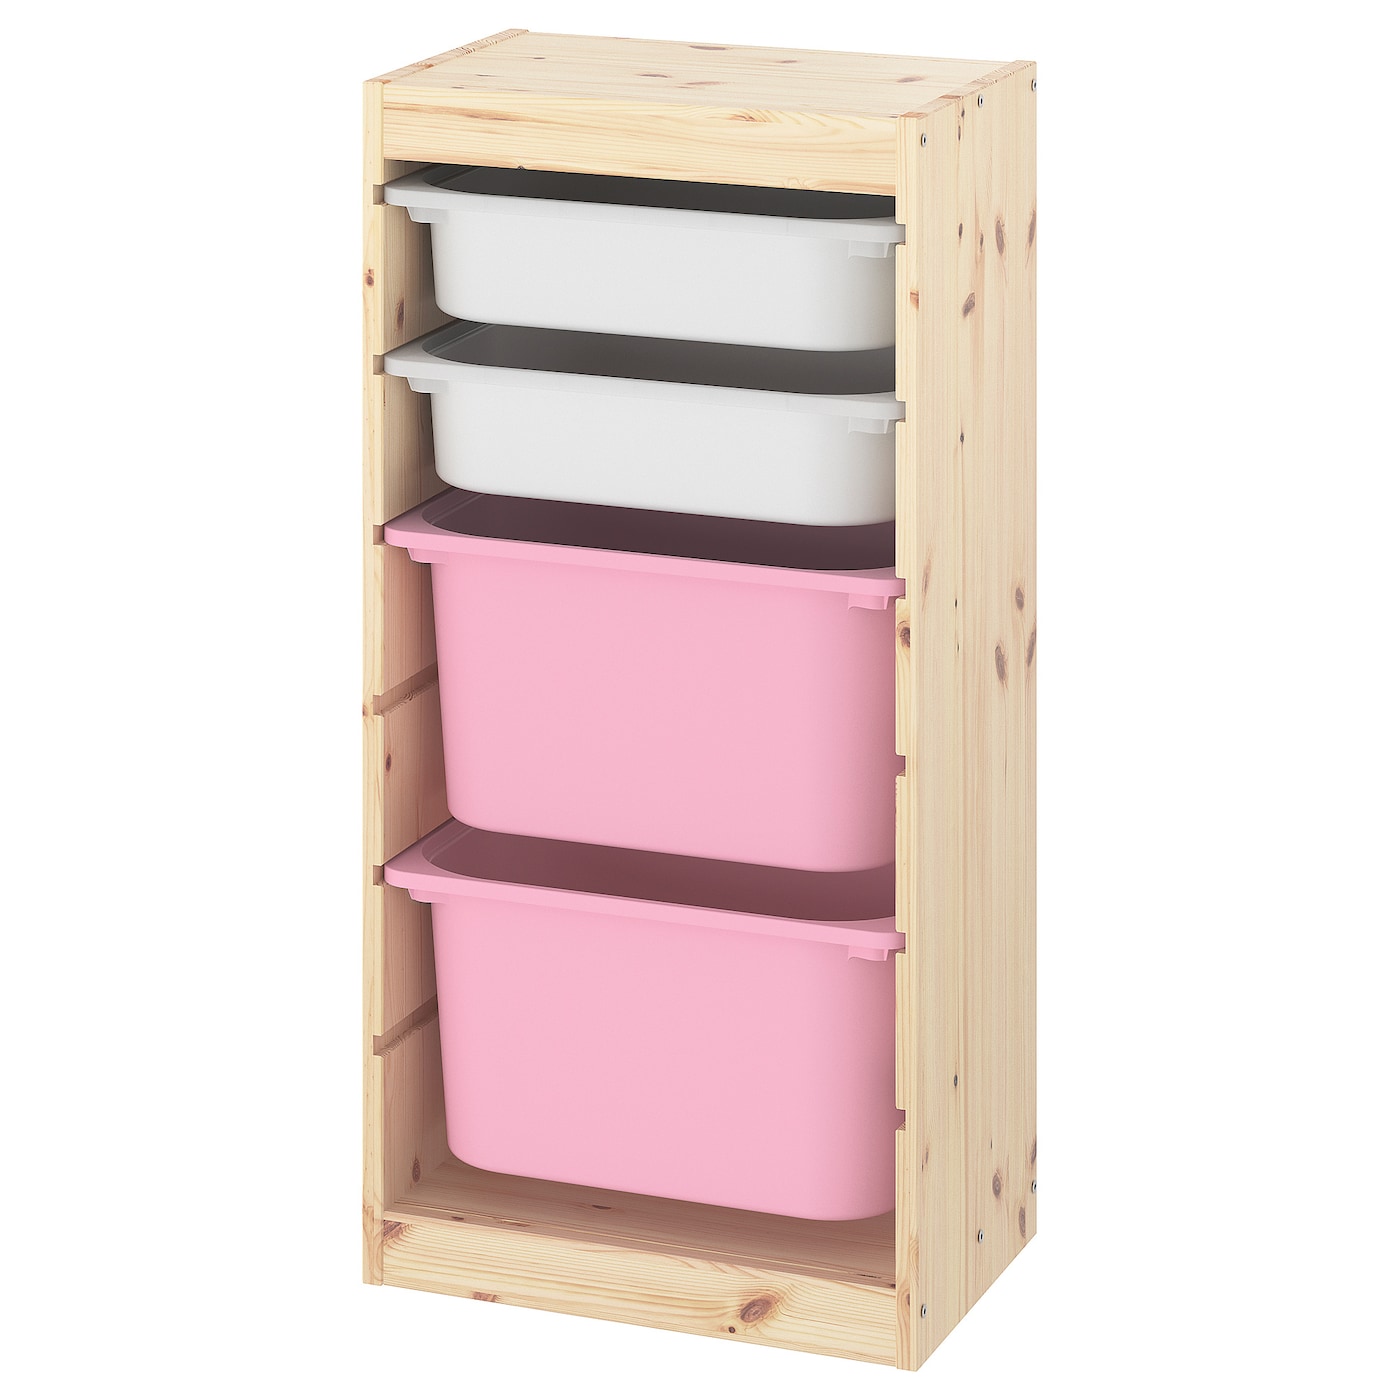 Стеллаж - IKEA TROFAST, 44х30х91 см, сосна/белый/розовый, ТРУФАСТ ИКЕА